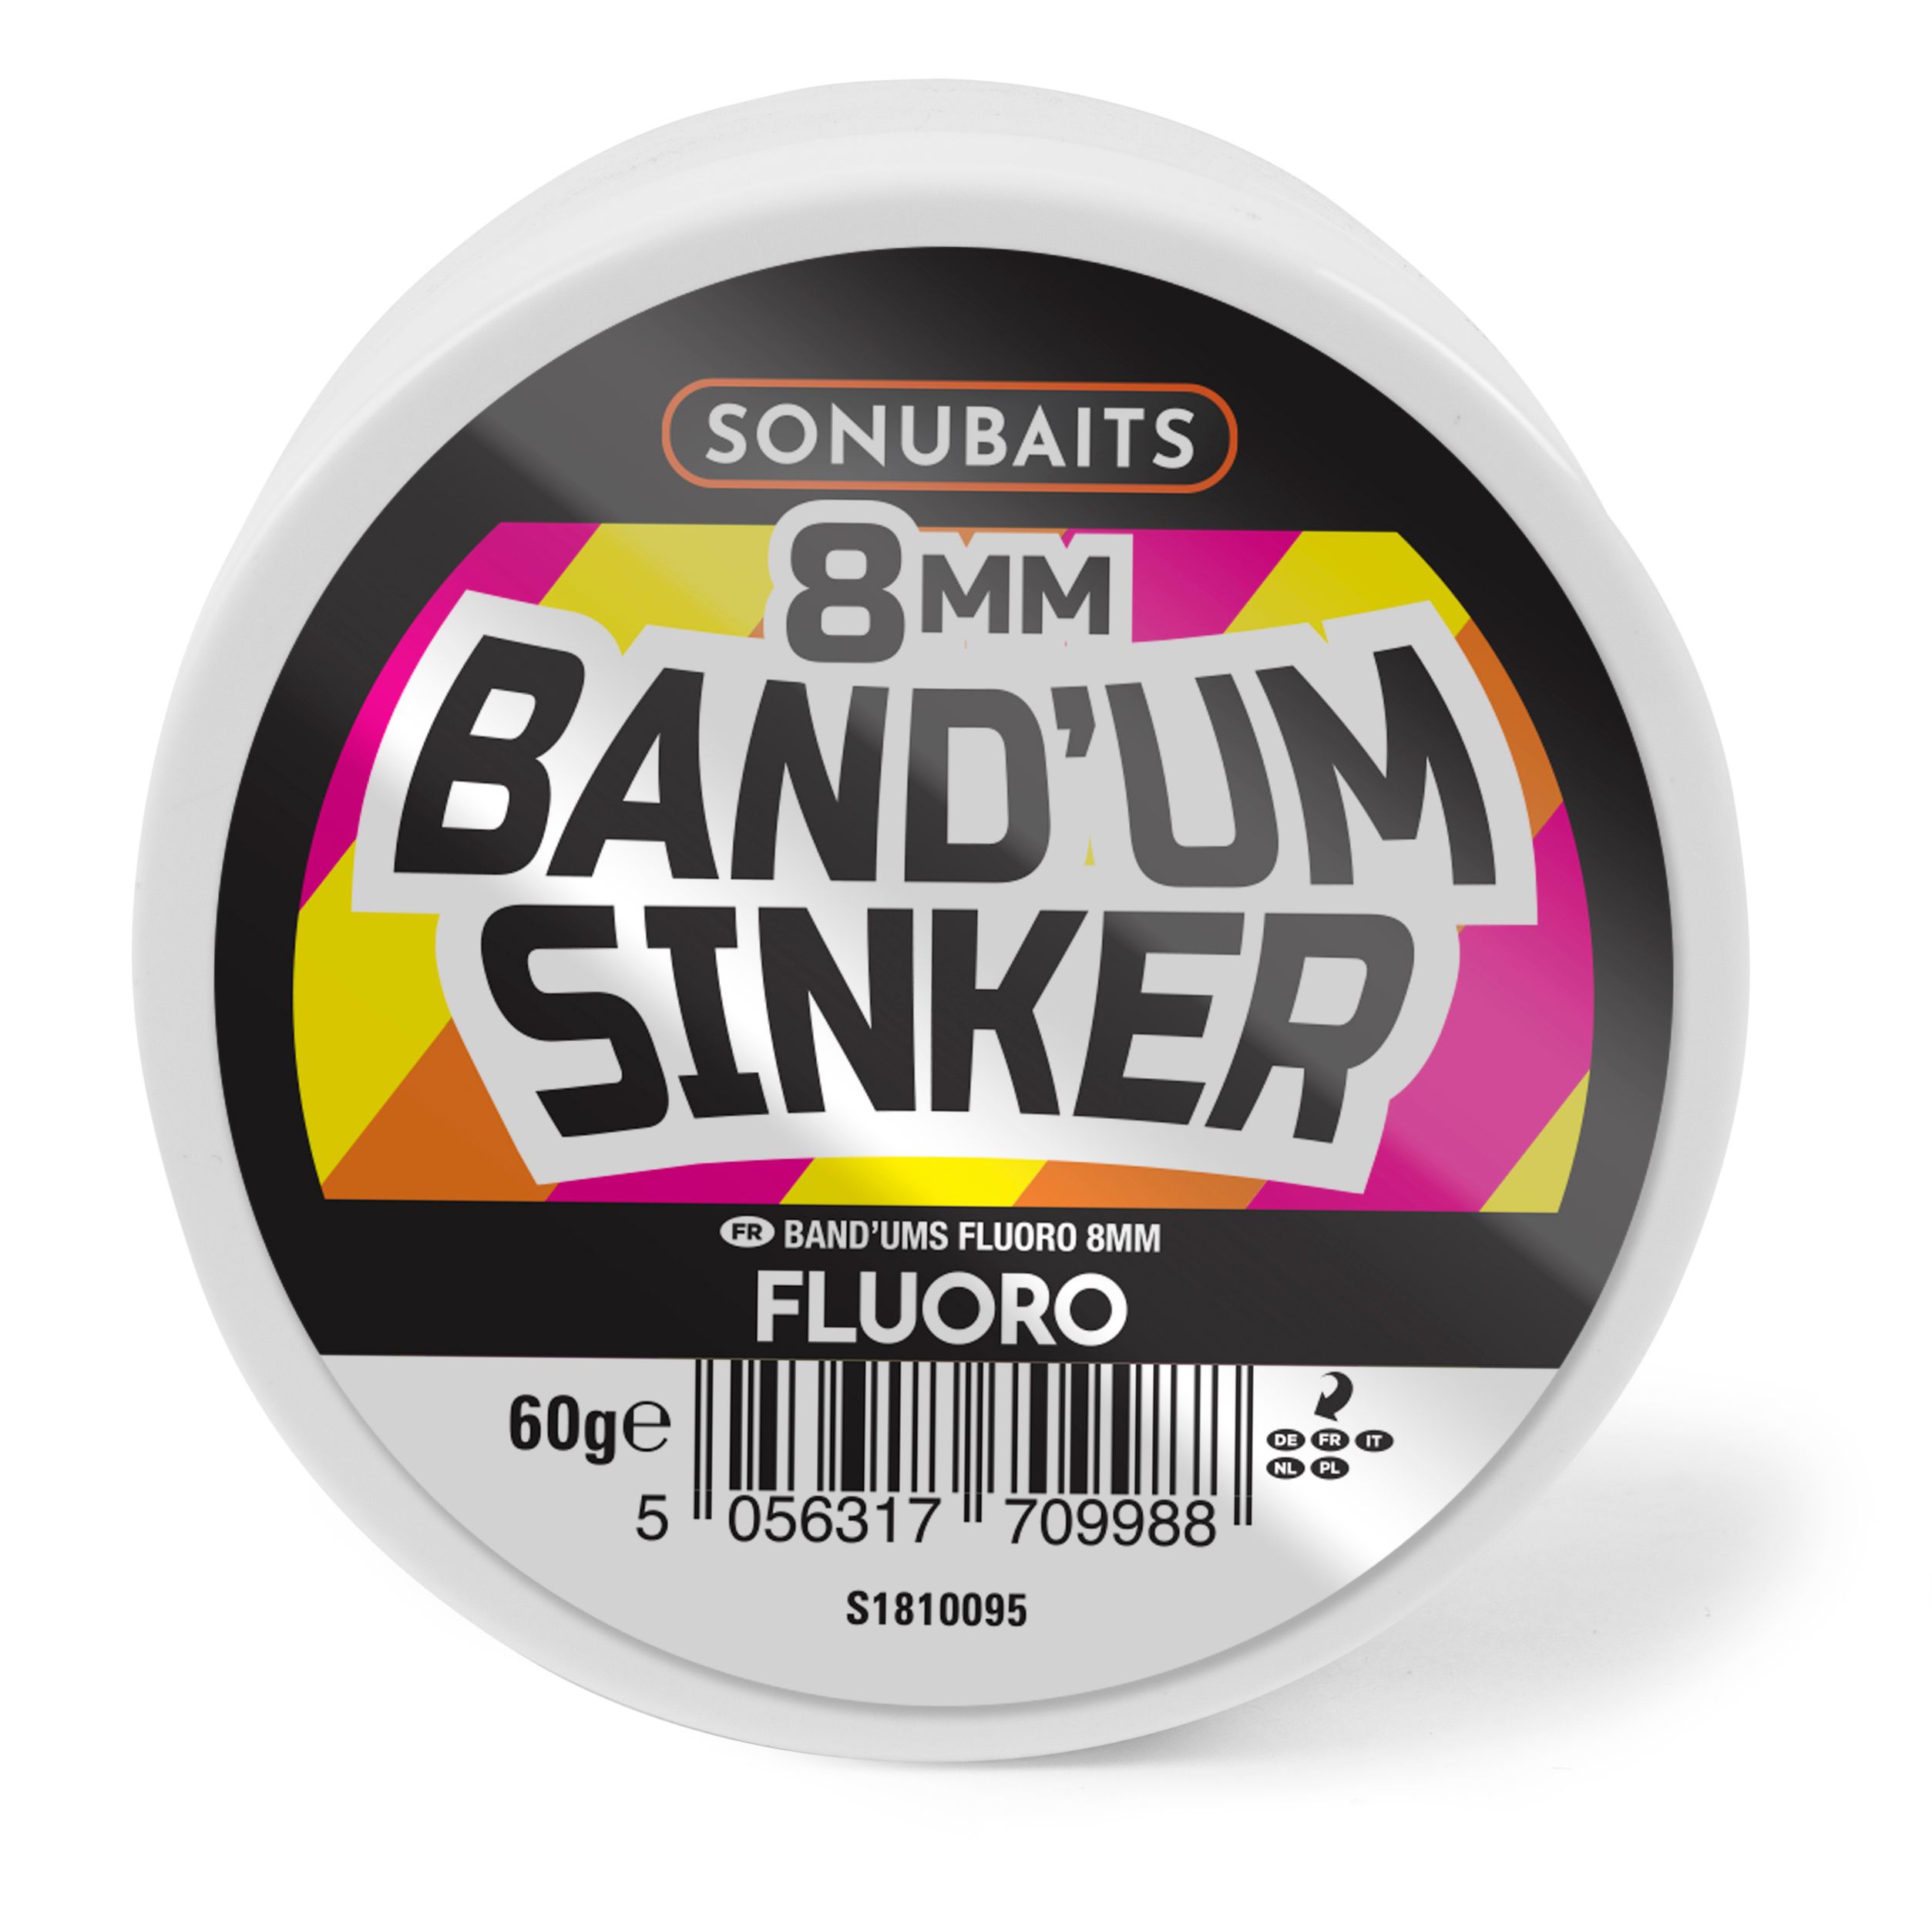 Bouillettes Sonubaits Band'um Sinker 8mm - Fluoro